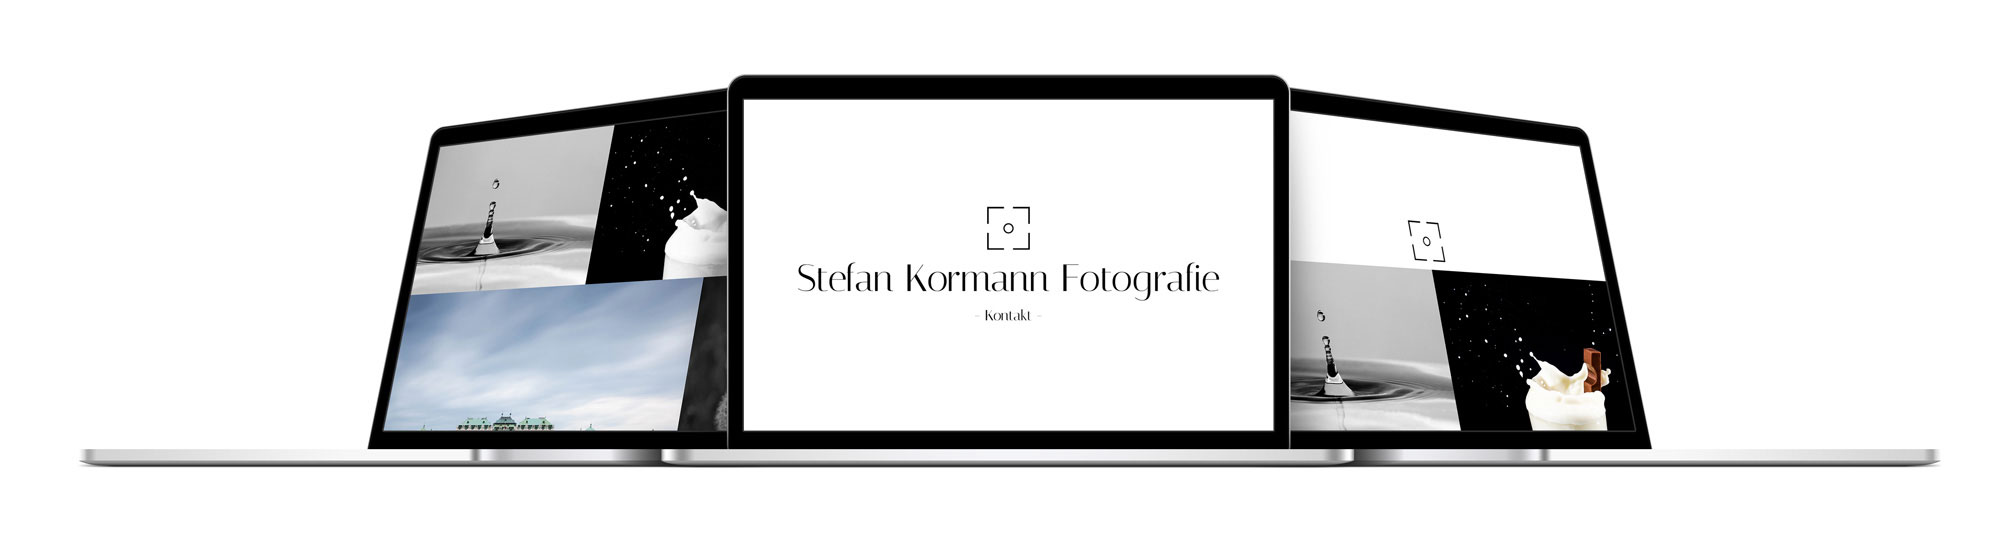 drei Macbooks nebeneinander, auf denen drei verschiedene Ansichten der Stefan Kormann Website zu sehen sind.